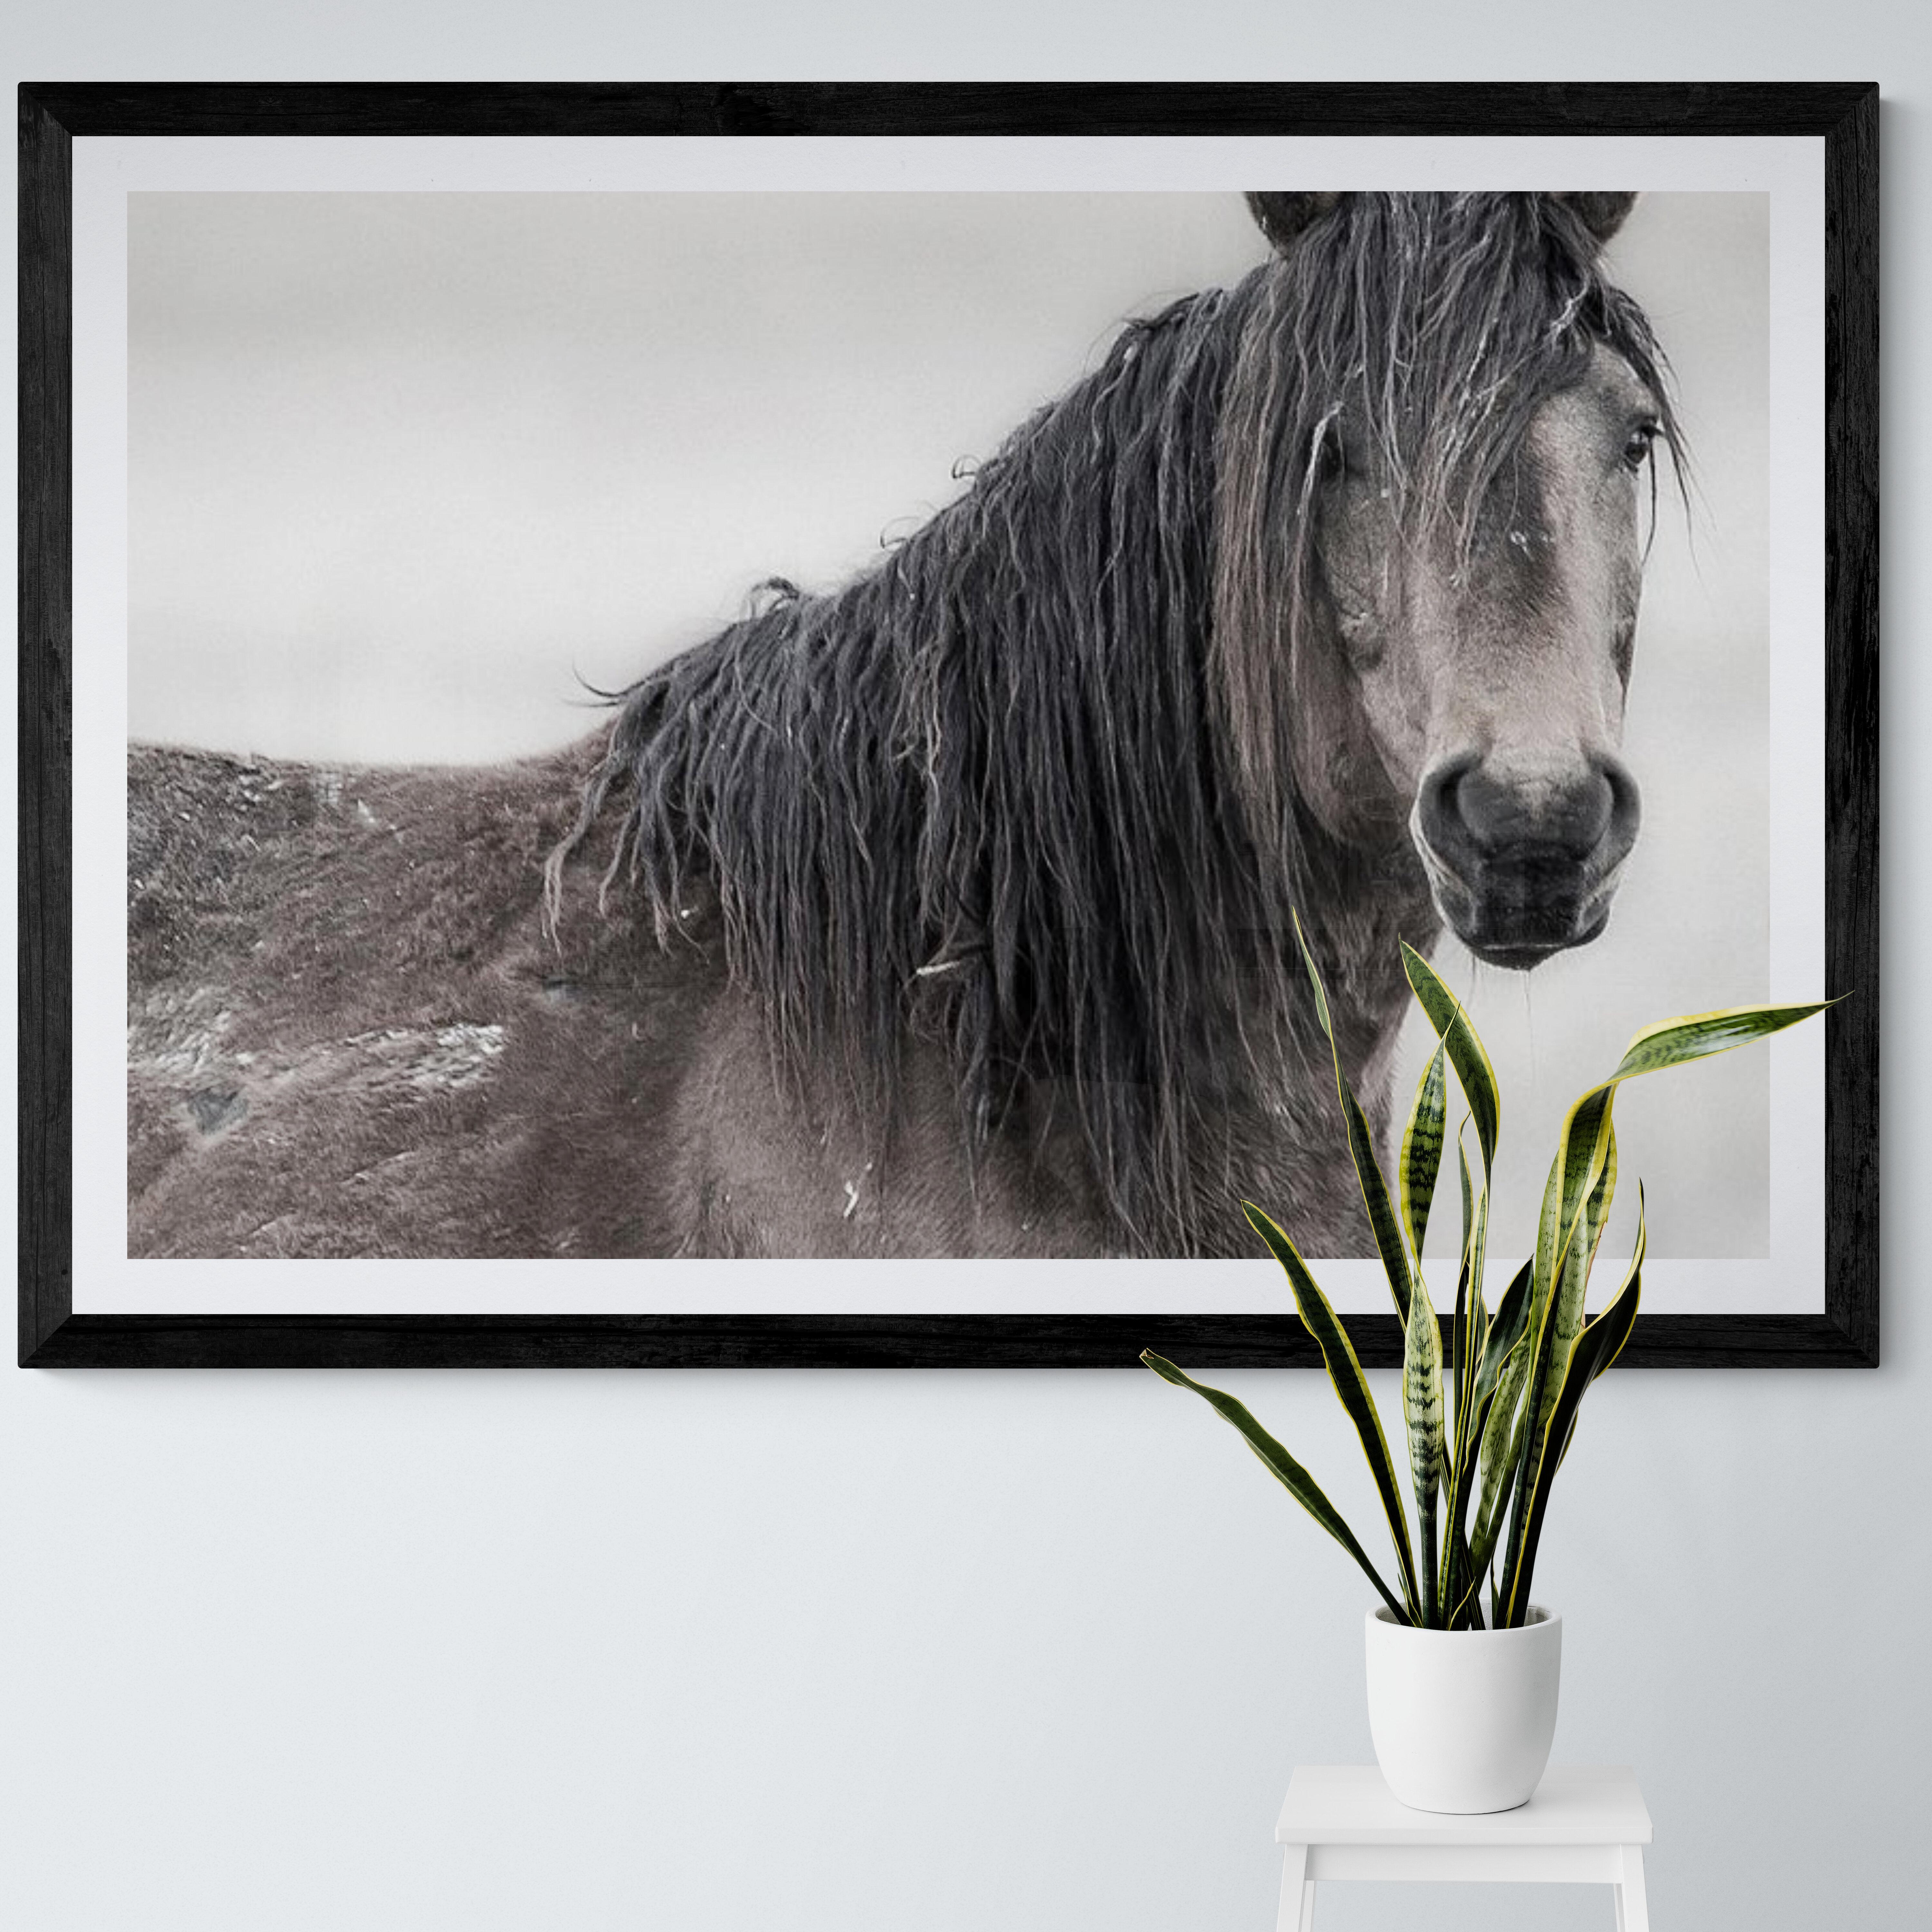 Il s'agit d'une photographie contemporaine en noir et blanc de chevaux sauvages d'Amérique du Nord.
Photographie par Shane Russeck
Imprimé sur du papier lustré d'archive 
Edition de 12 singed ad numérotés par l'artiste. 
40